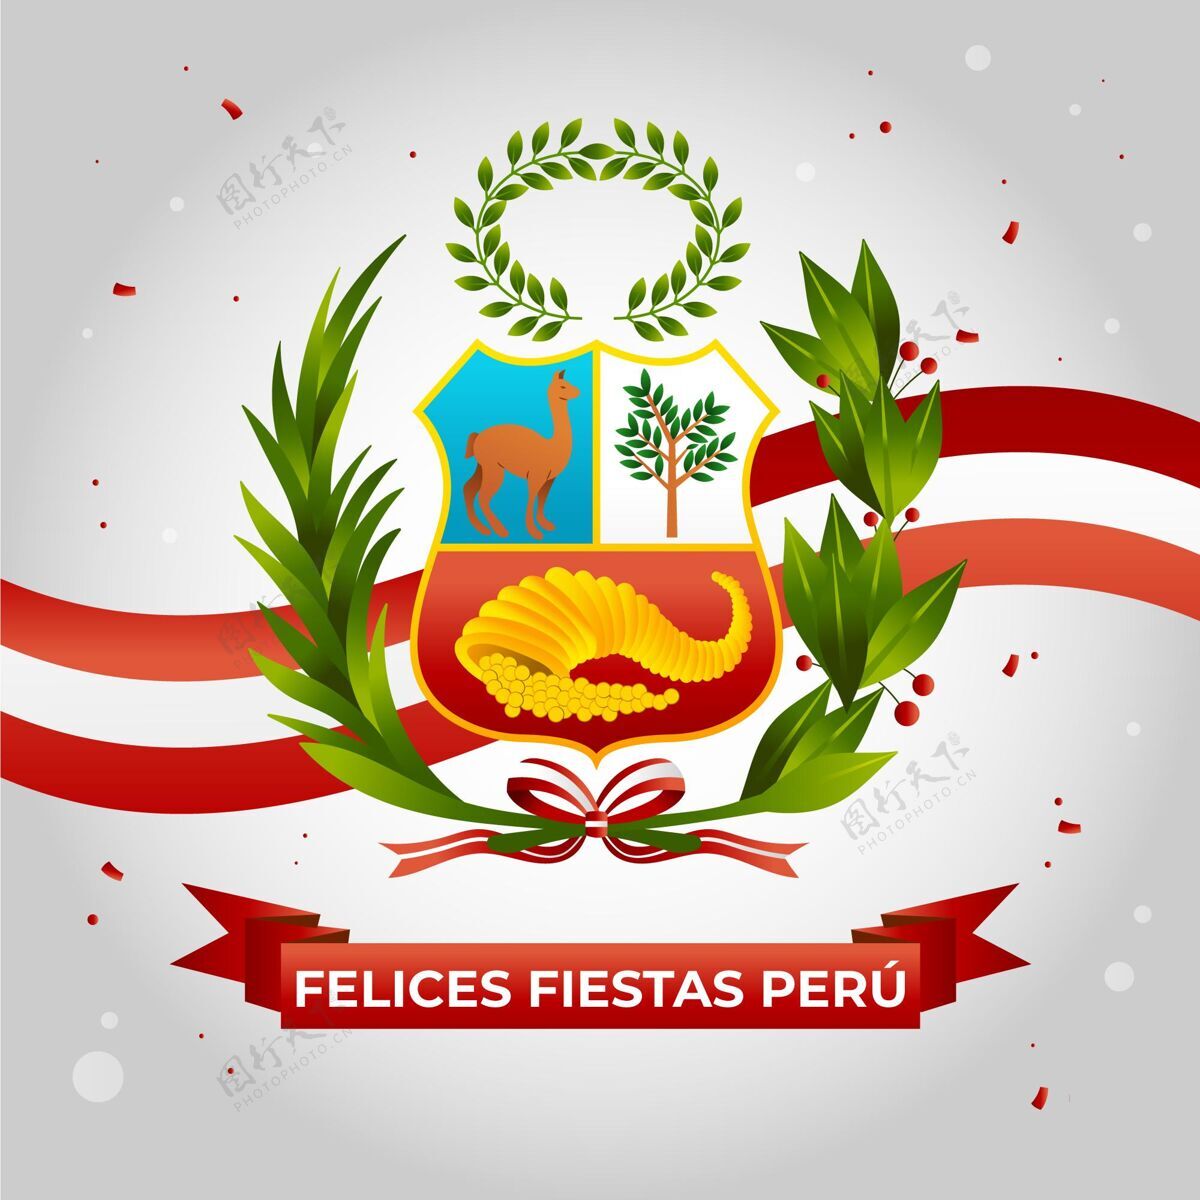 庆祝梯度节帕特里亚斯秘鲁插画事件纪念梯度